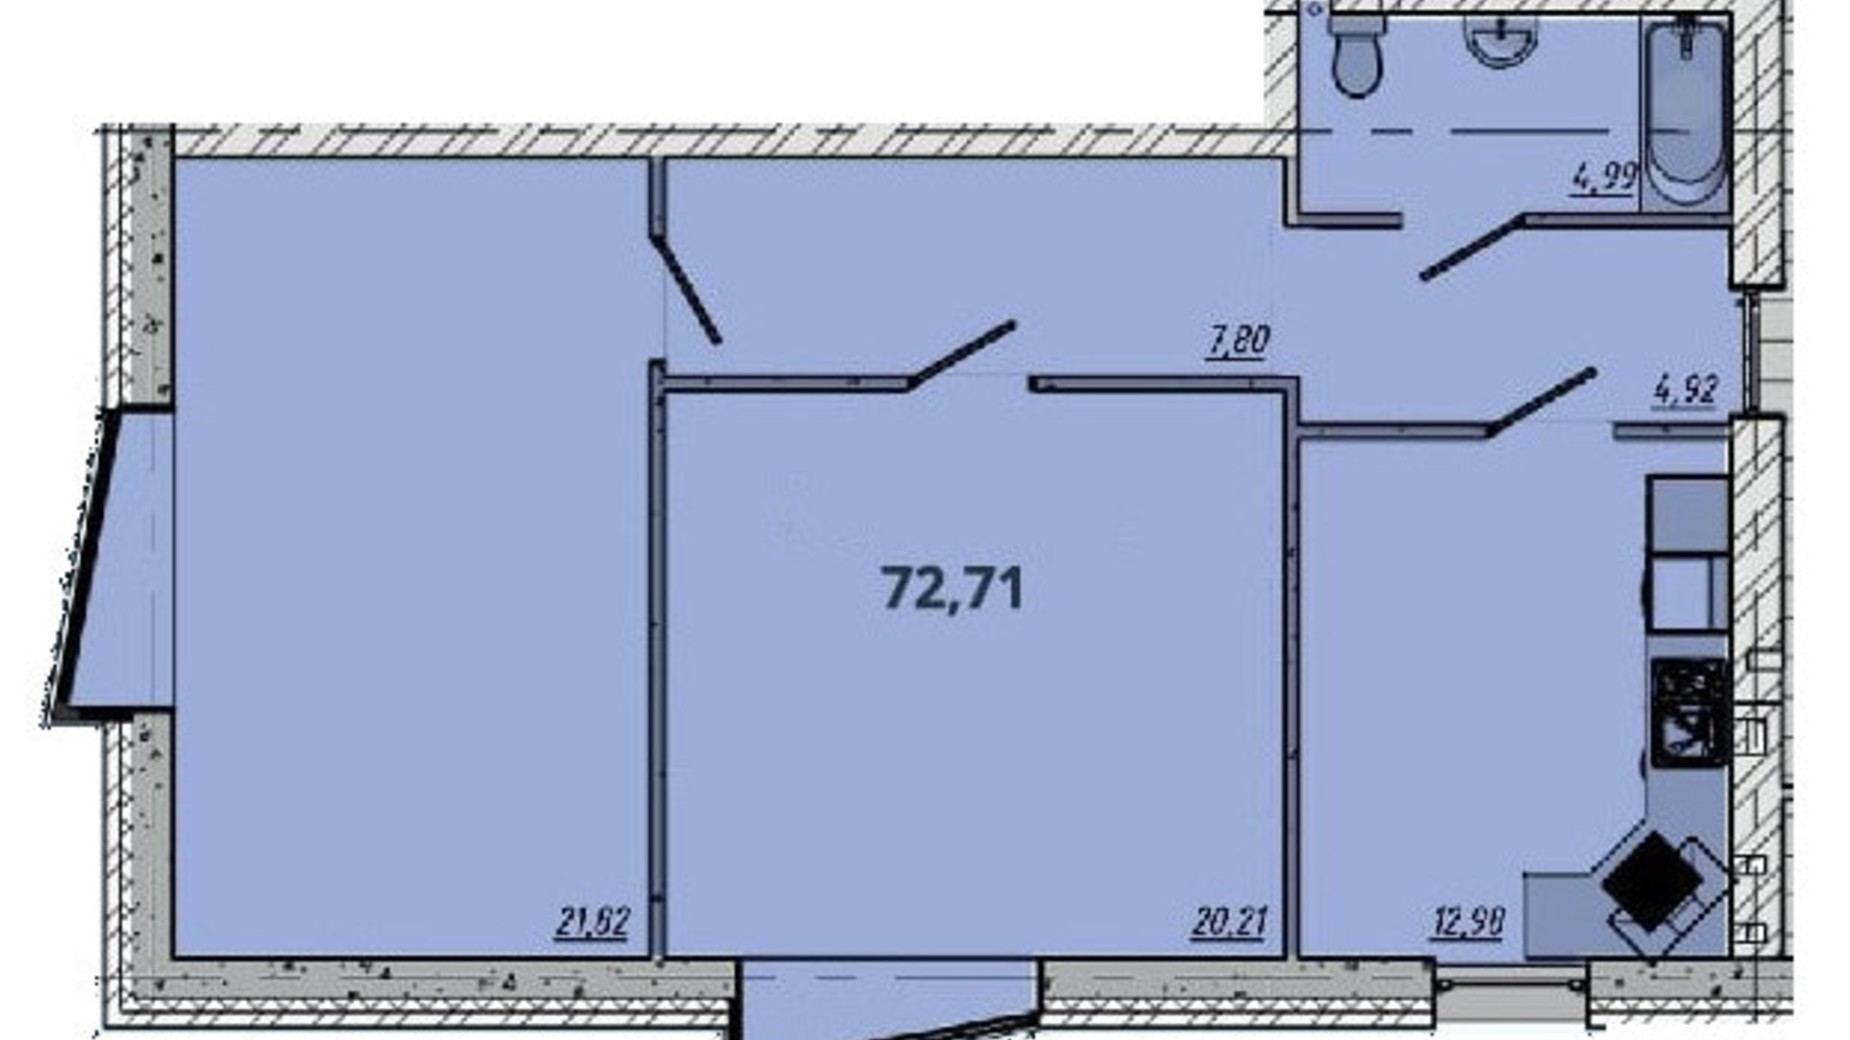 Планування 2-кімнатної квартири в ЖК Європейський квартал 72.71 м², фото 550075